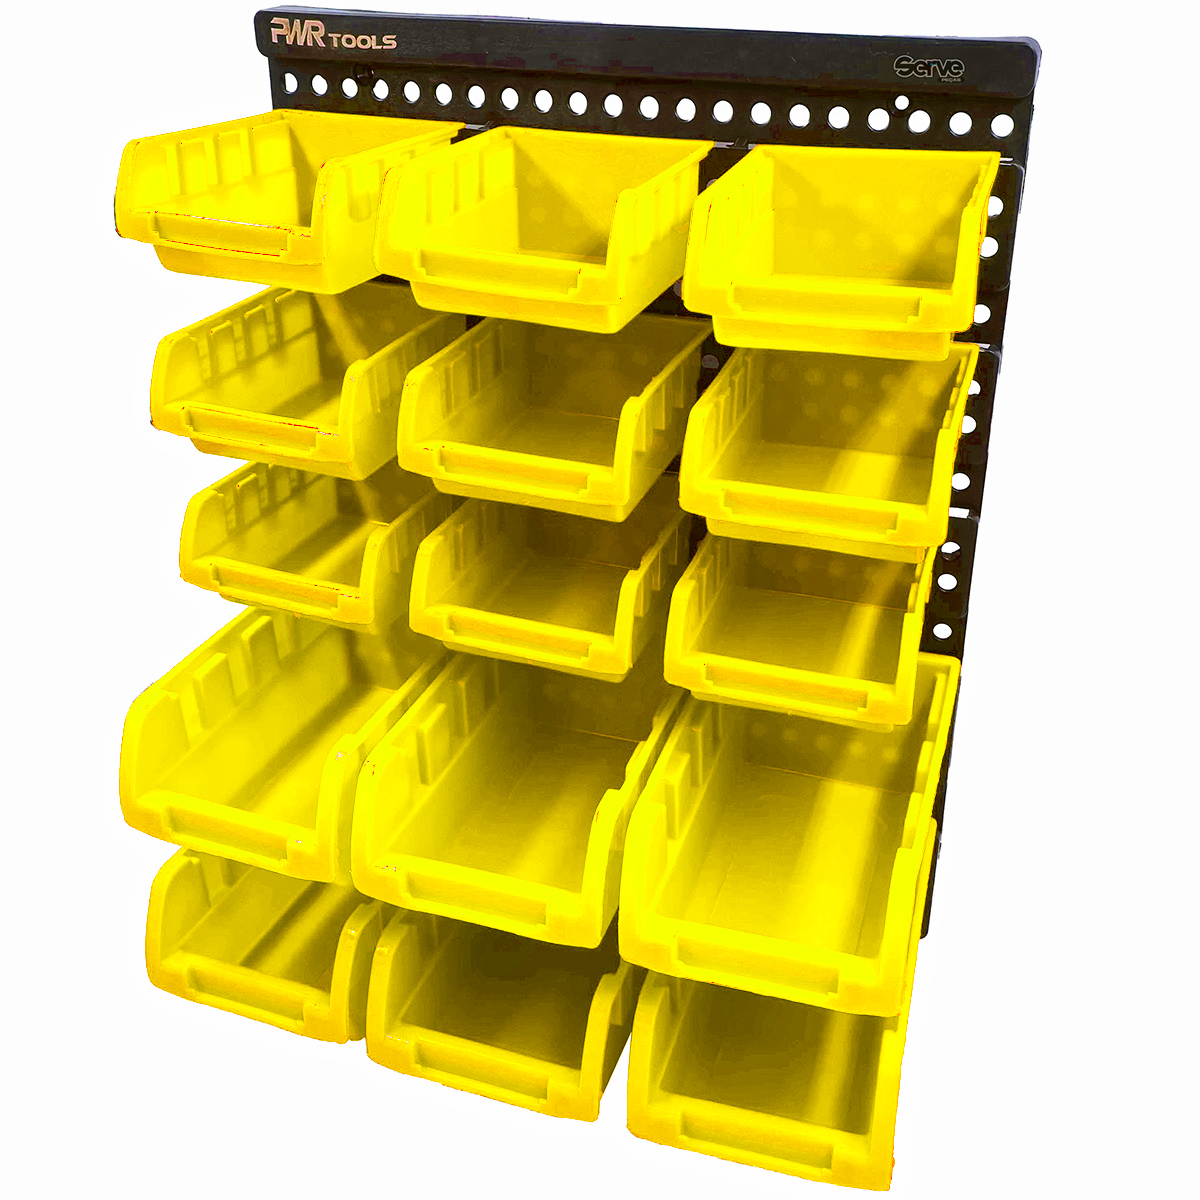 Painel Gaveteiro Organizador com 15 caixas - PWR TOOLS